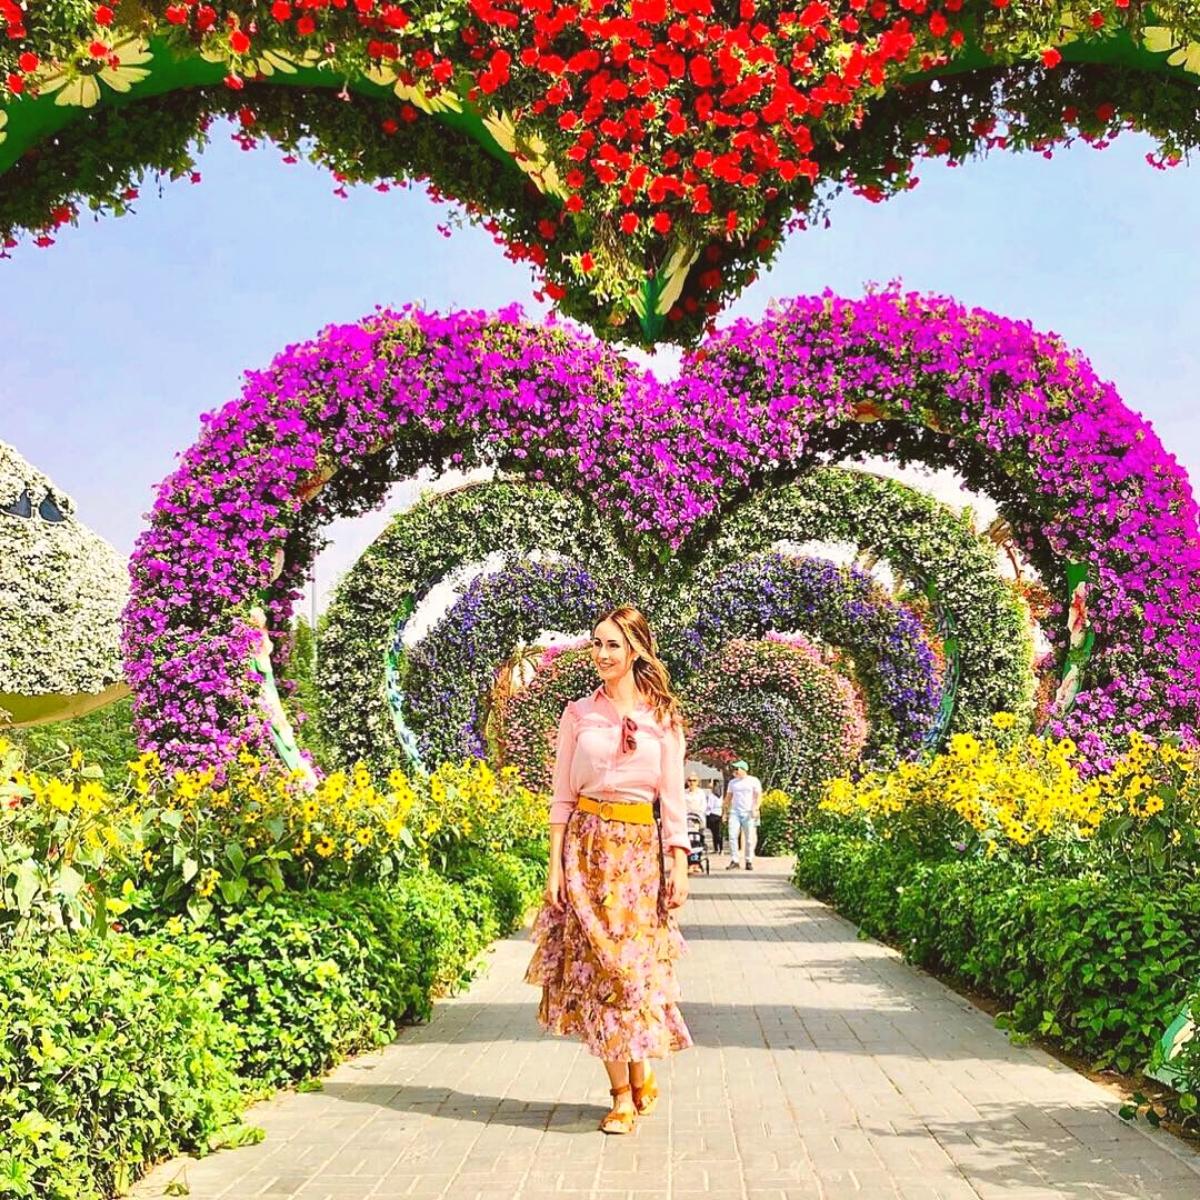 Dubai Miracle Garden on Thursd